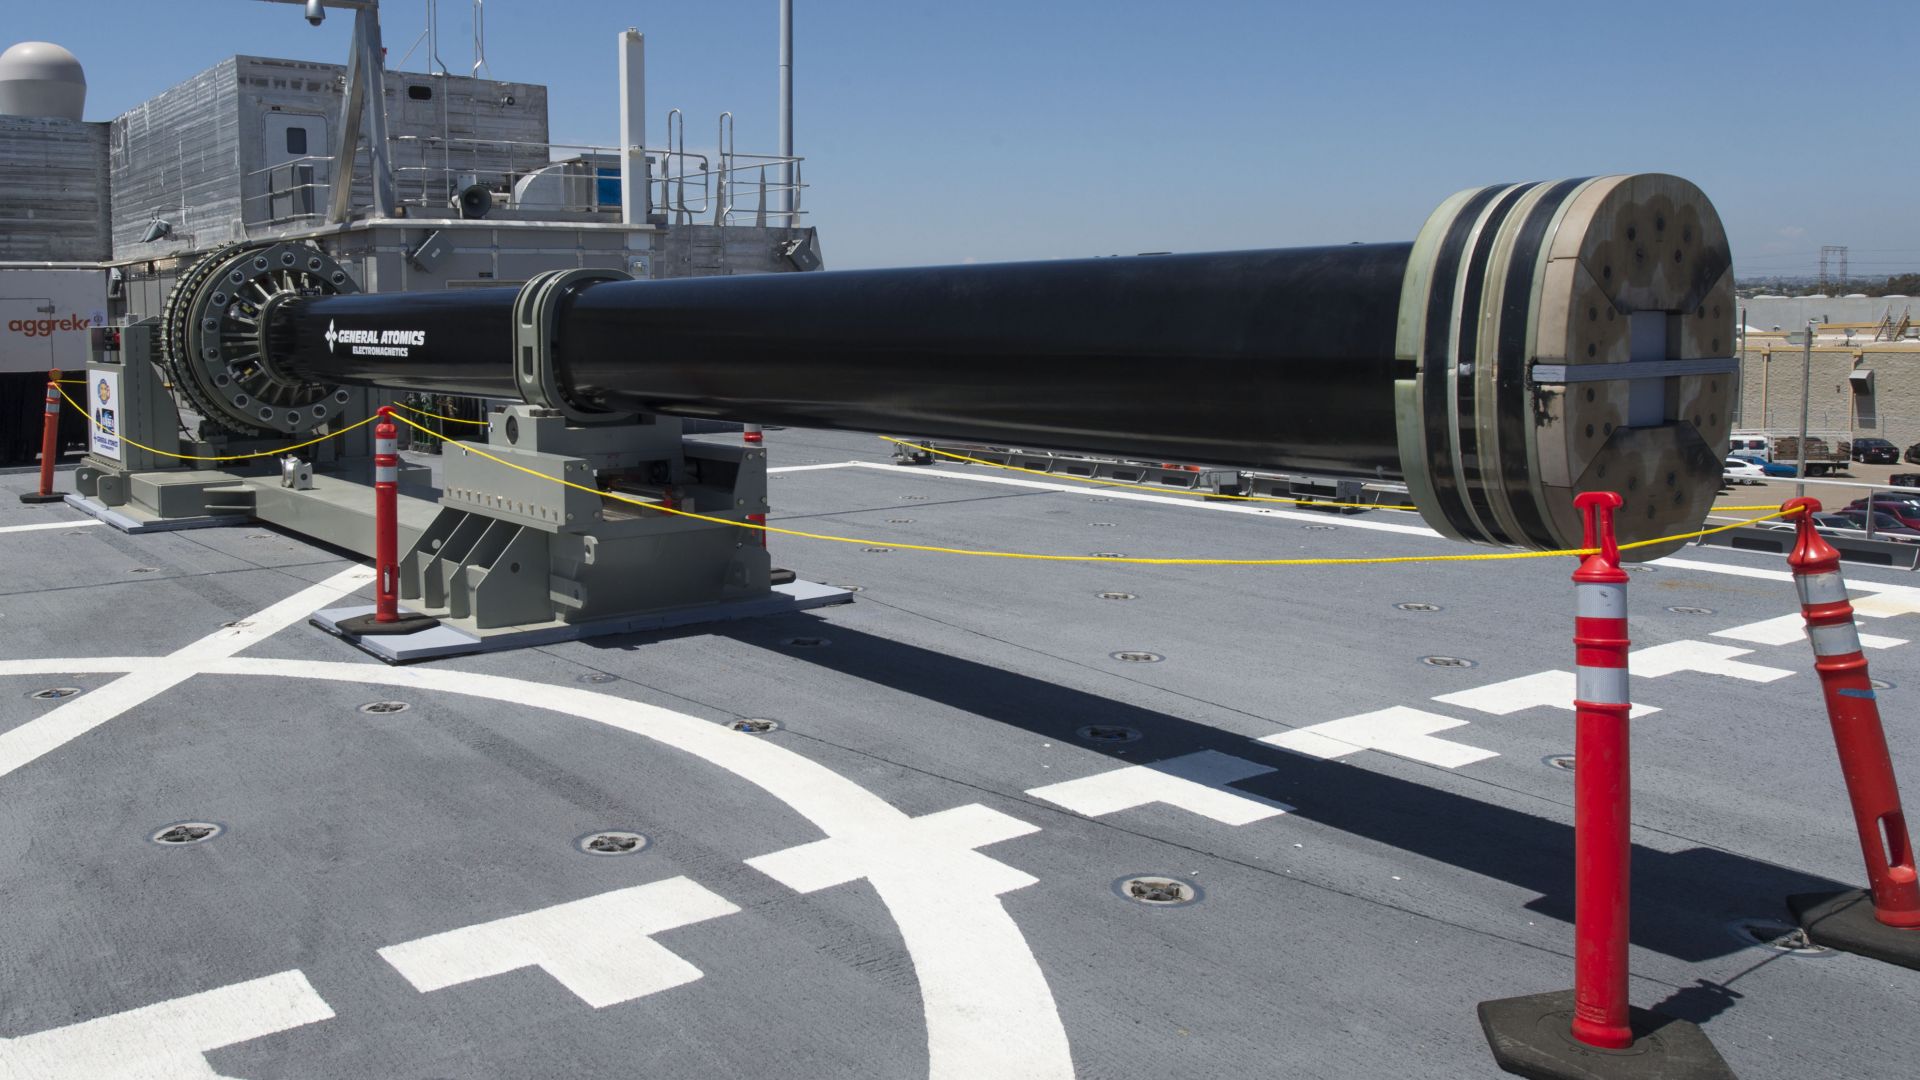 Гиперзвуковое оружие, Электромагнитное оружие, ВМС США, Hypersonic Railgun, Electromagnetic Railgun, U.S. Navy (horizontal)